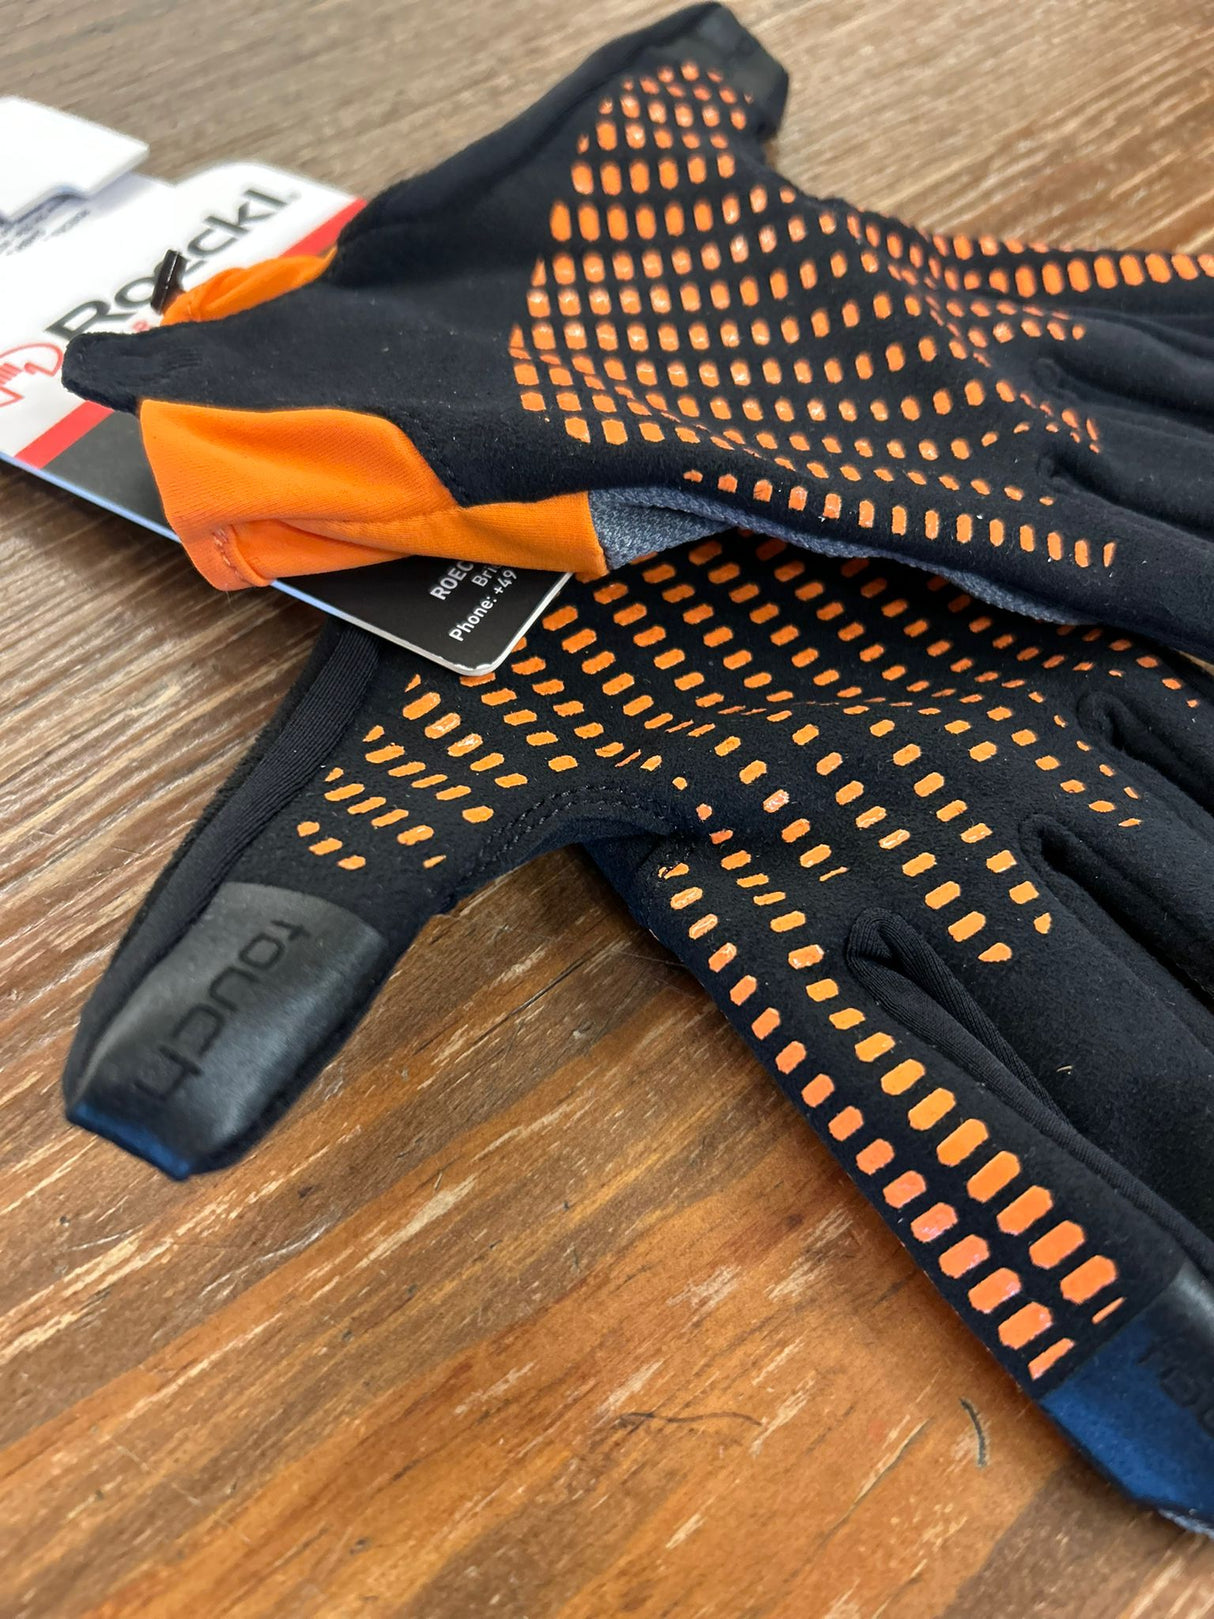 Guanti modello Lier Roeckl arancio,grigio e nero